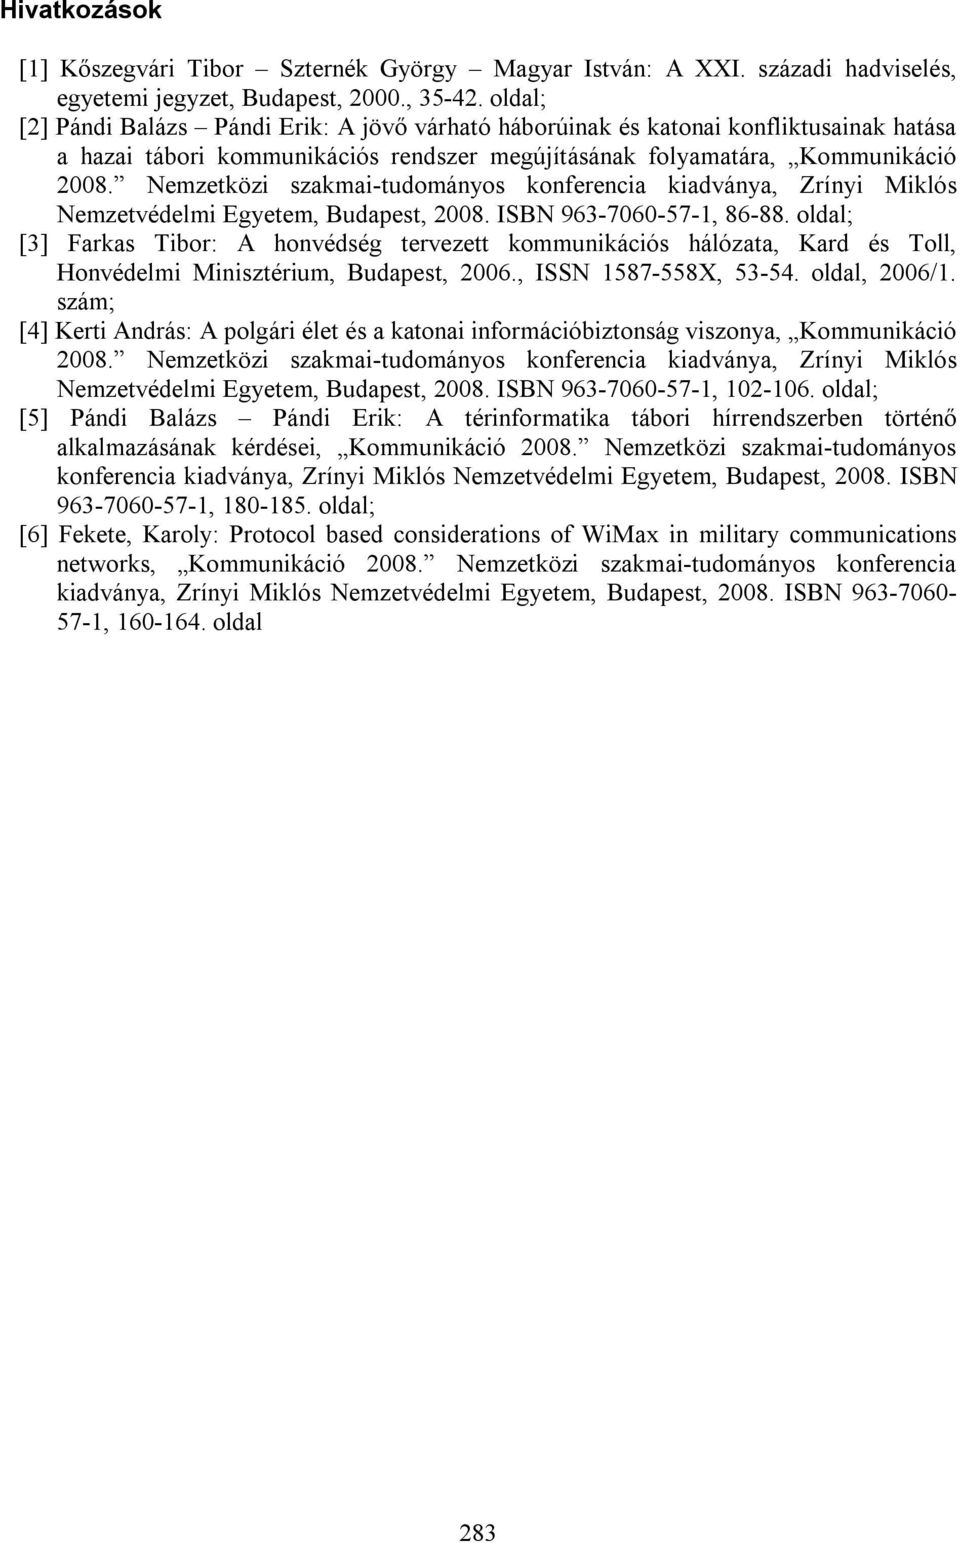 Nemzetközi szakmai-tudományos konferencia kiadványa, Zrínyi Miklós Nemzetvédelmi Egyetem, Budapest, 2008. ISBN 963-7060-57-1, 86-88.